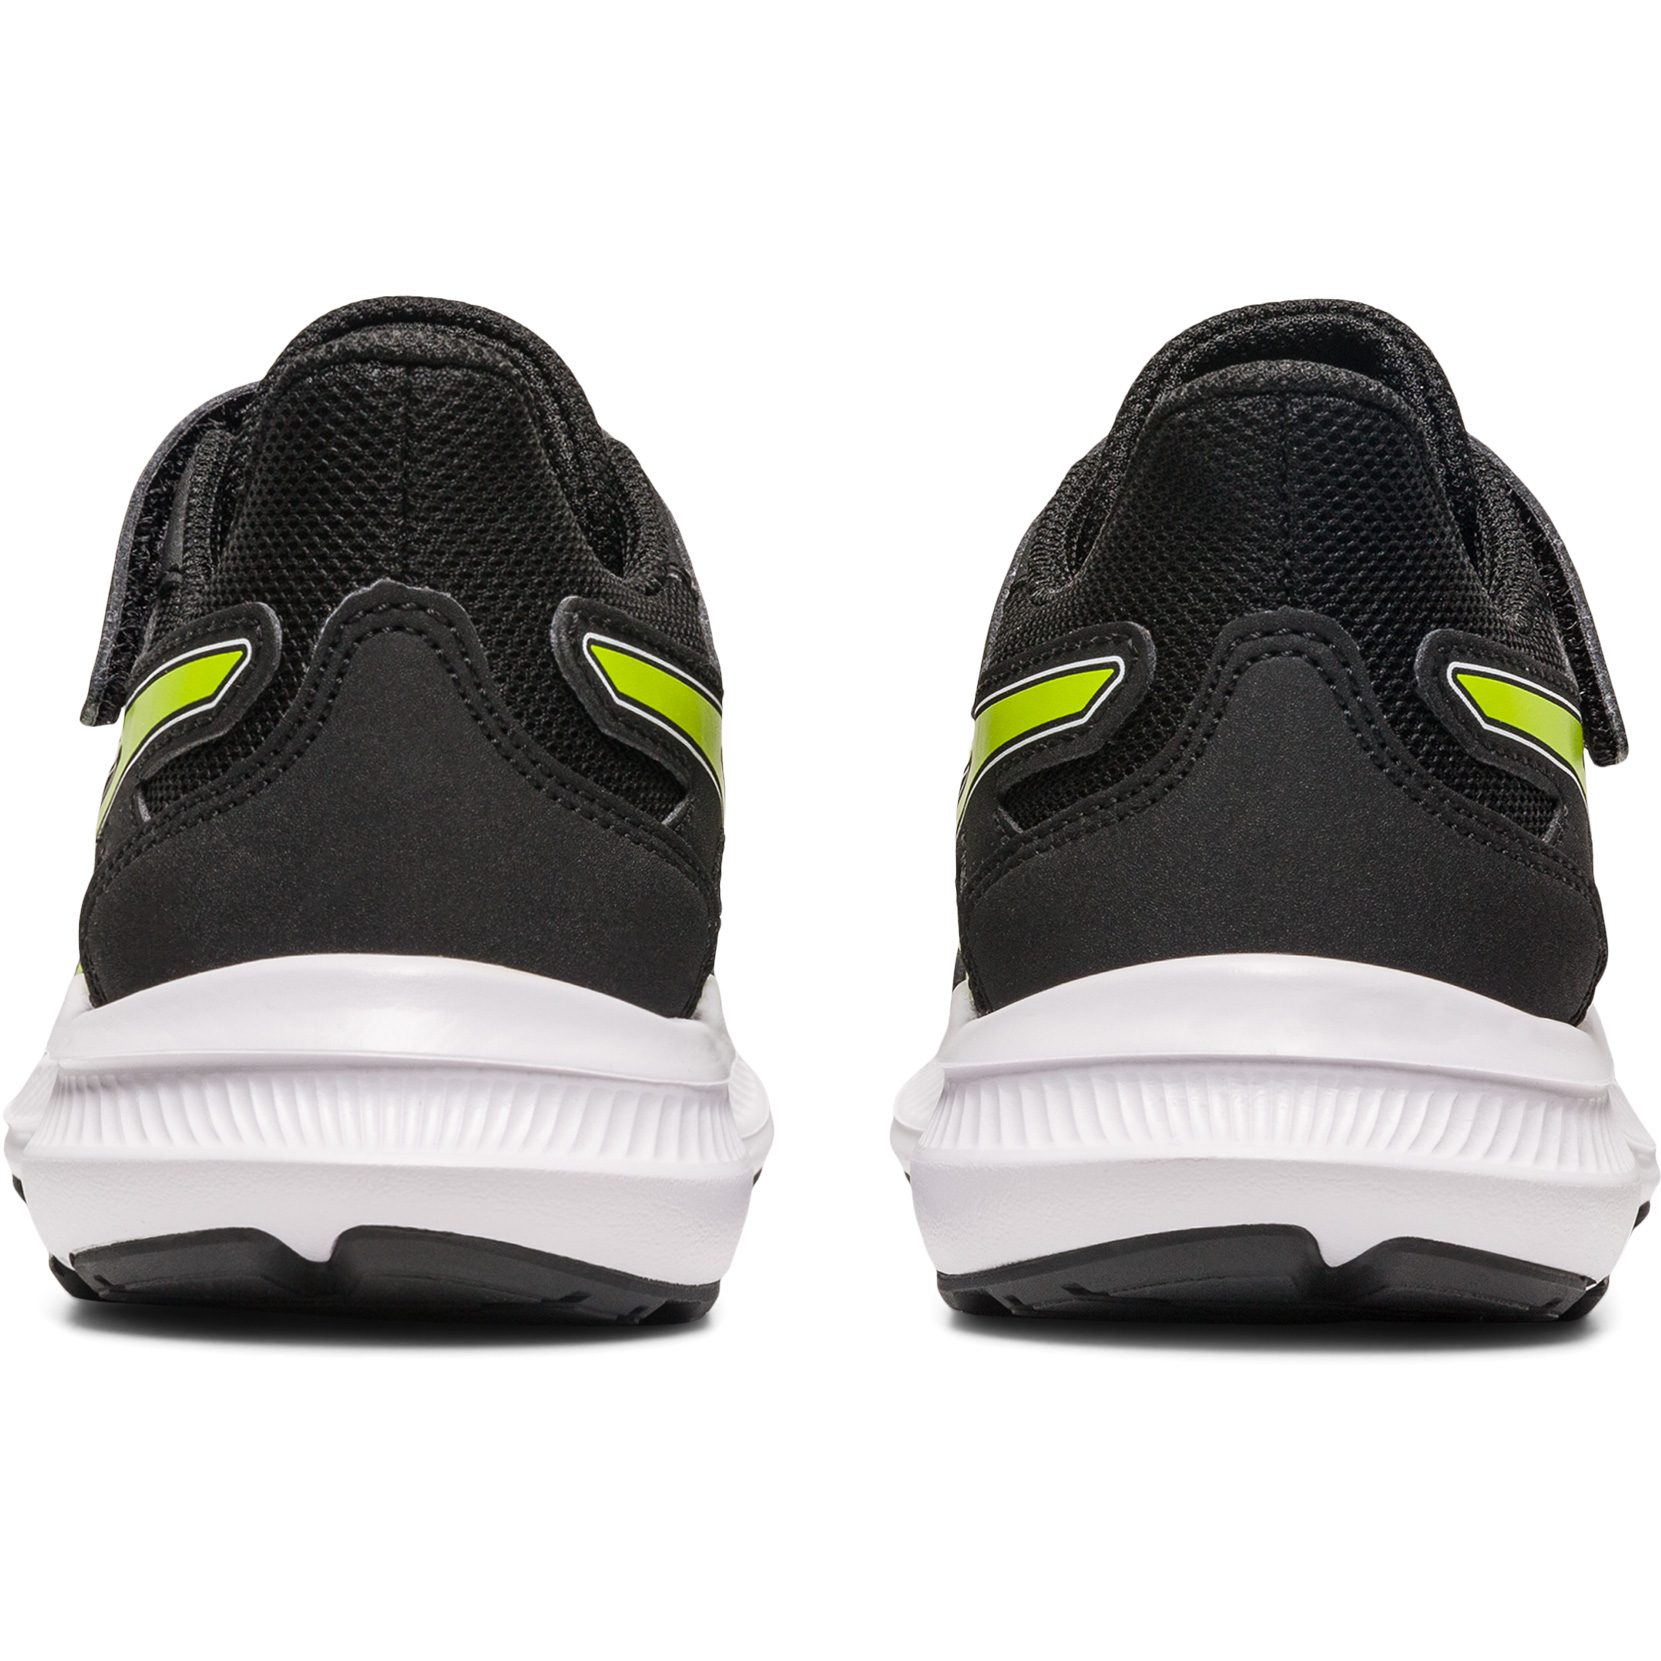 [Wird immer beliebter] ASICS - Jolt 4 Kids Shop Shoes Running black PS Sport at Bittl